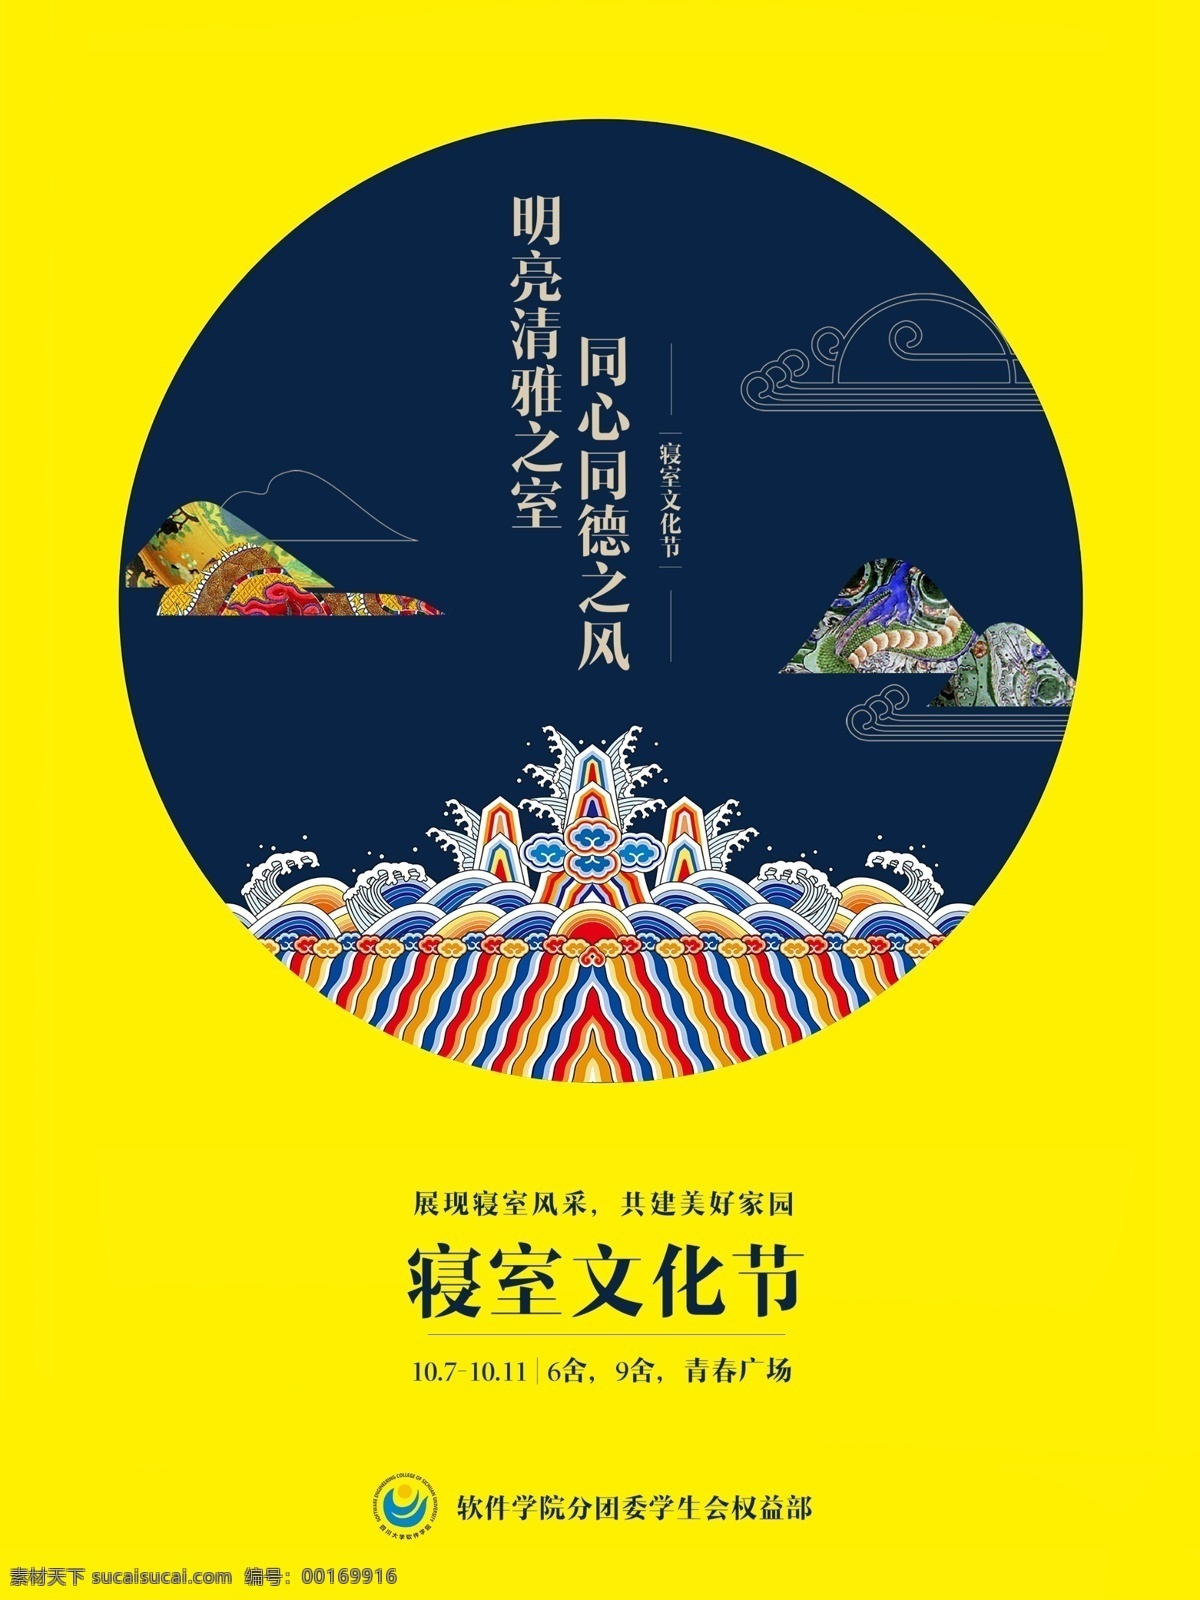 寝室文化节 中国 古典 风格 海报 黄色 壁画风格 海上升明月